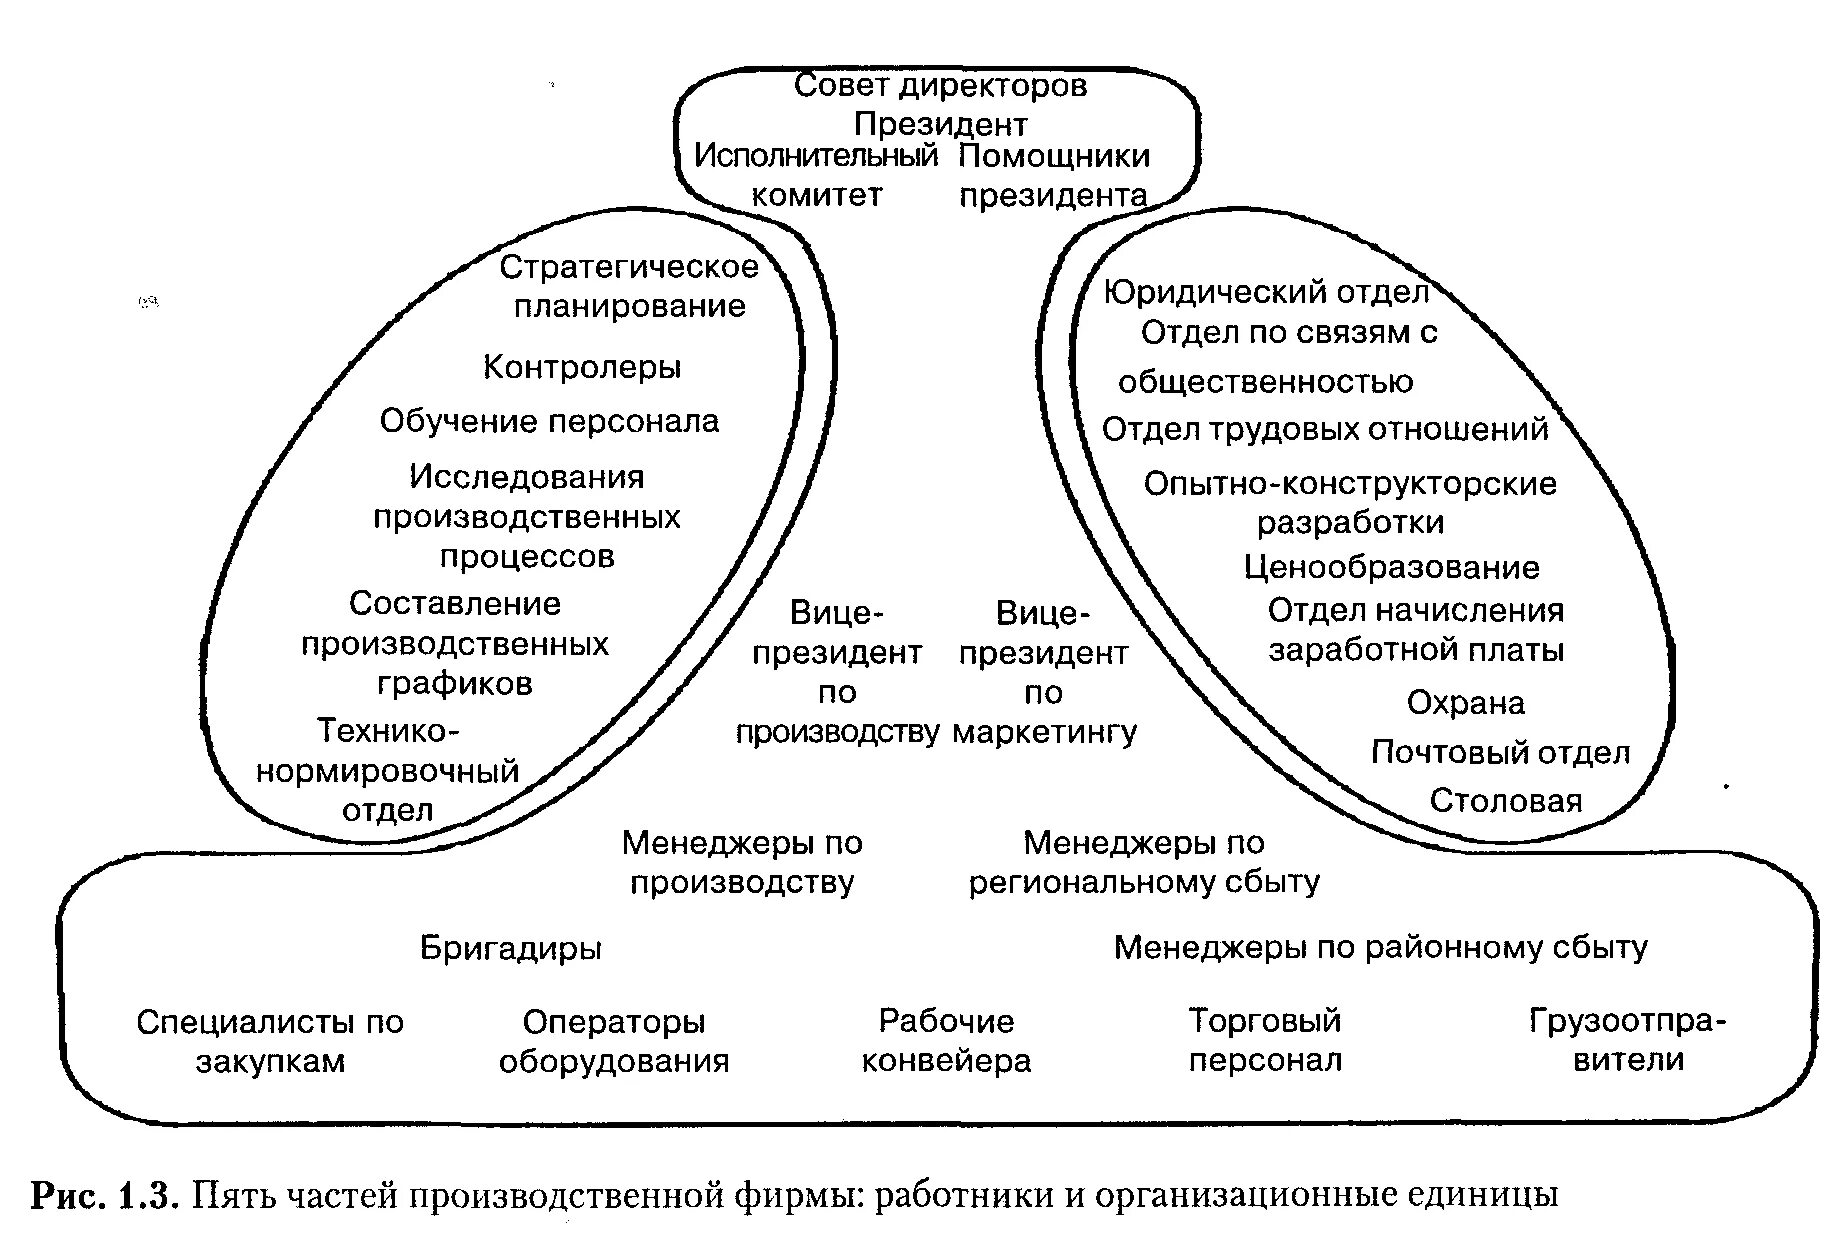 Организационная структура Минцберга.